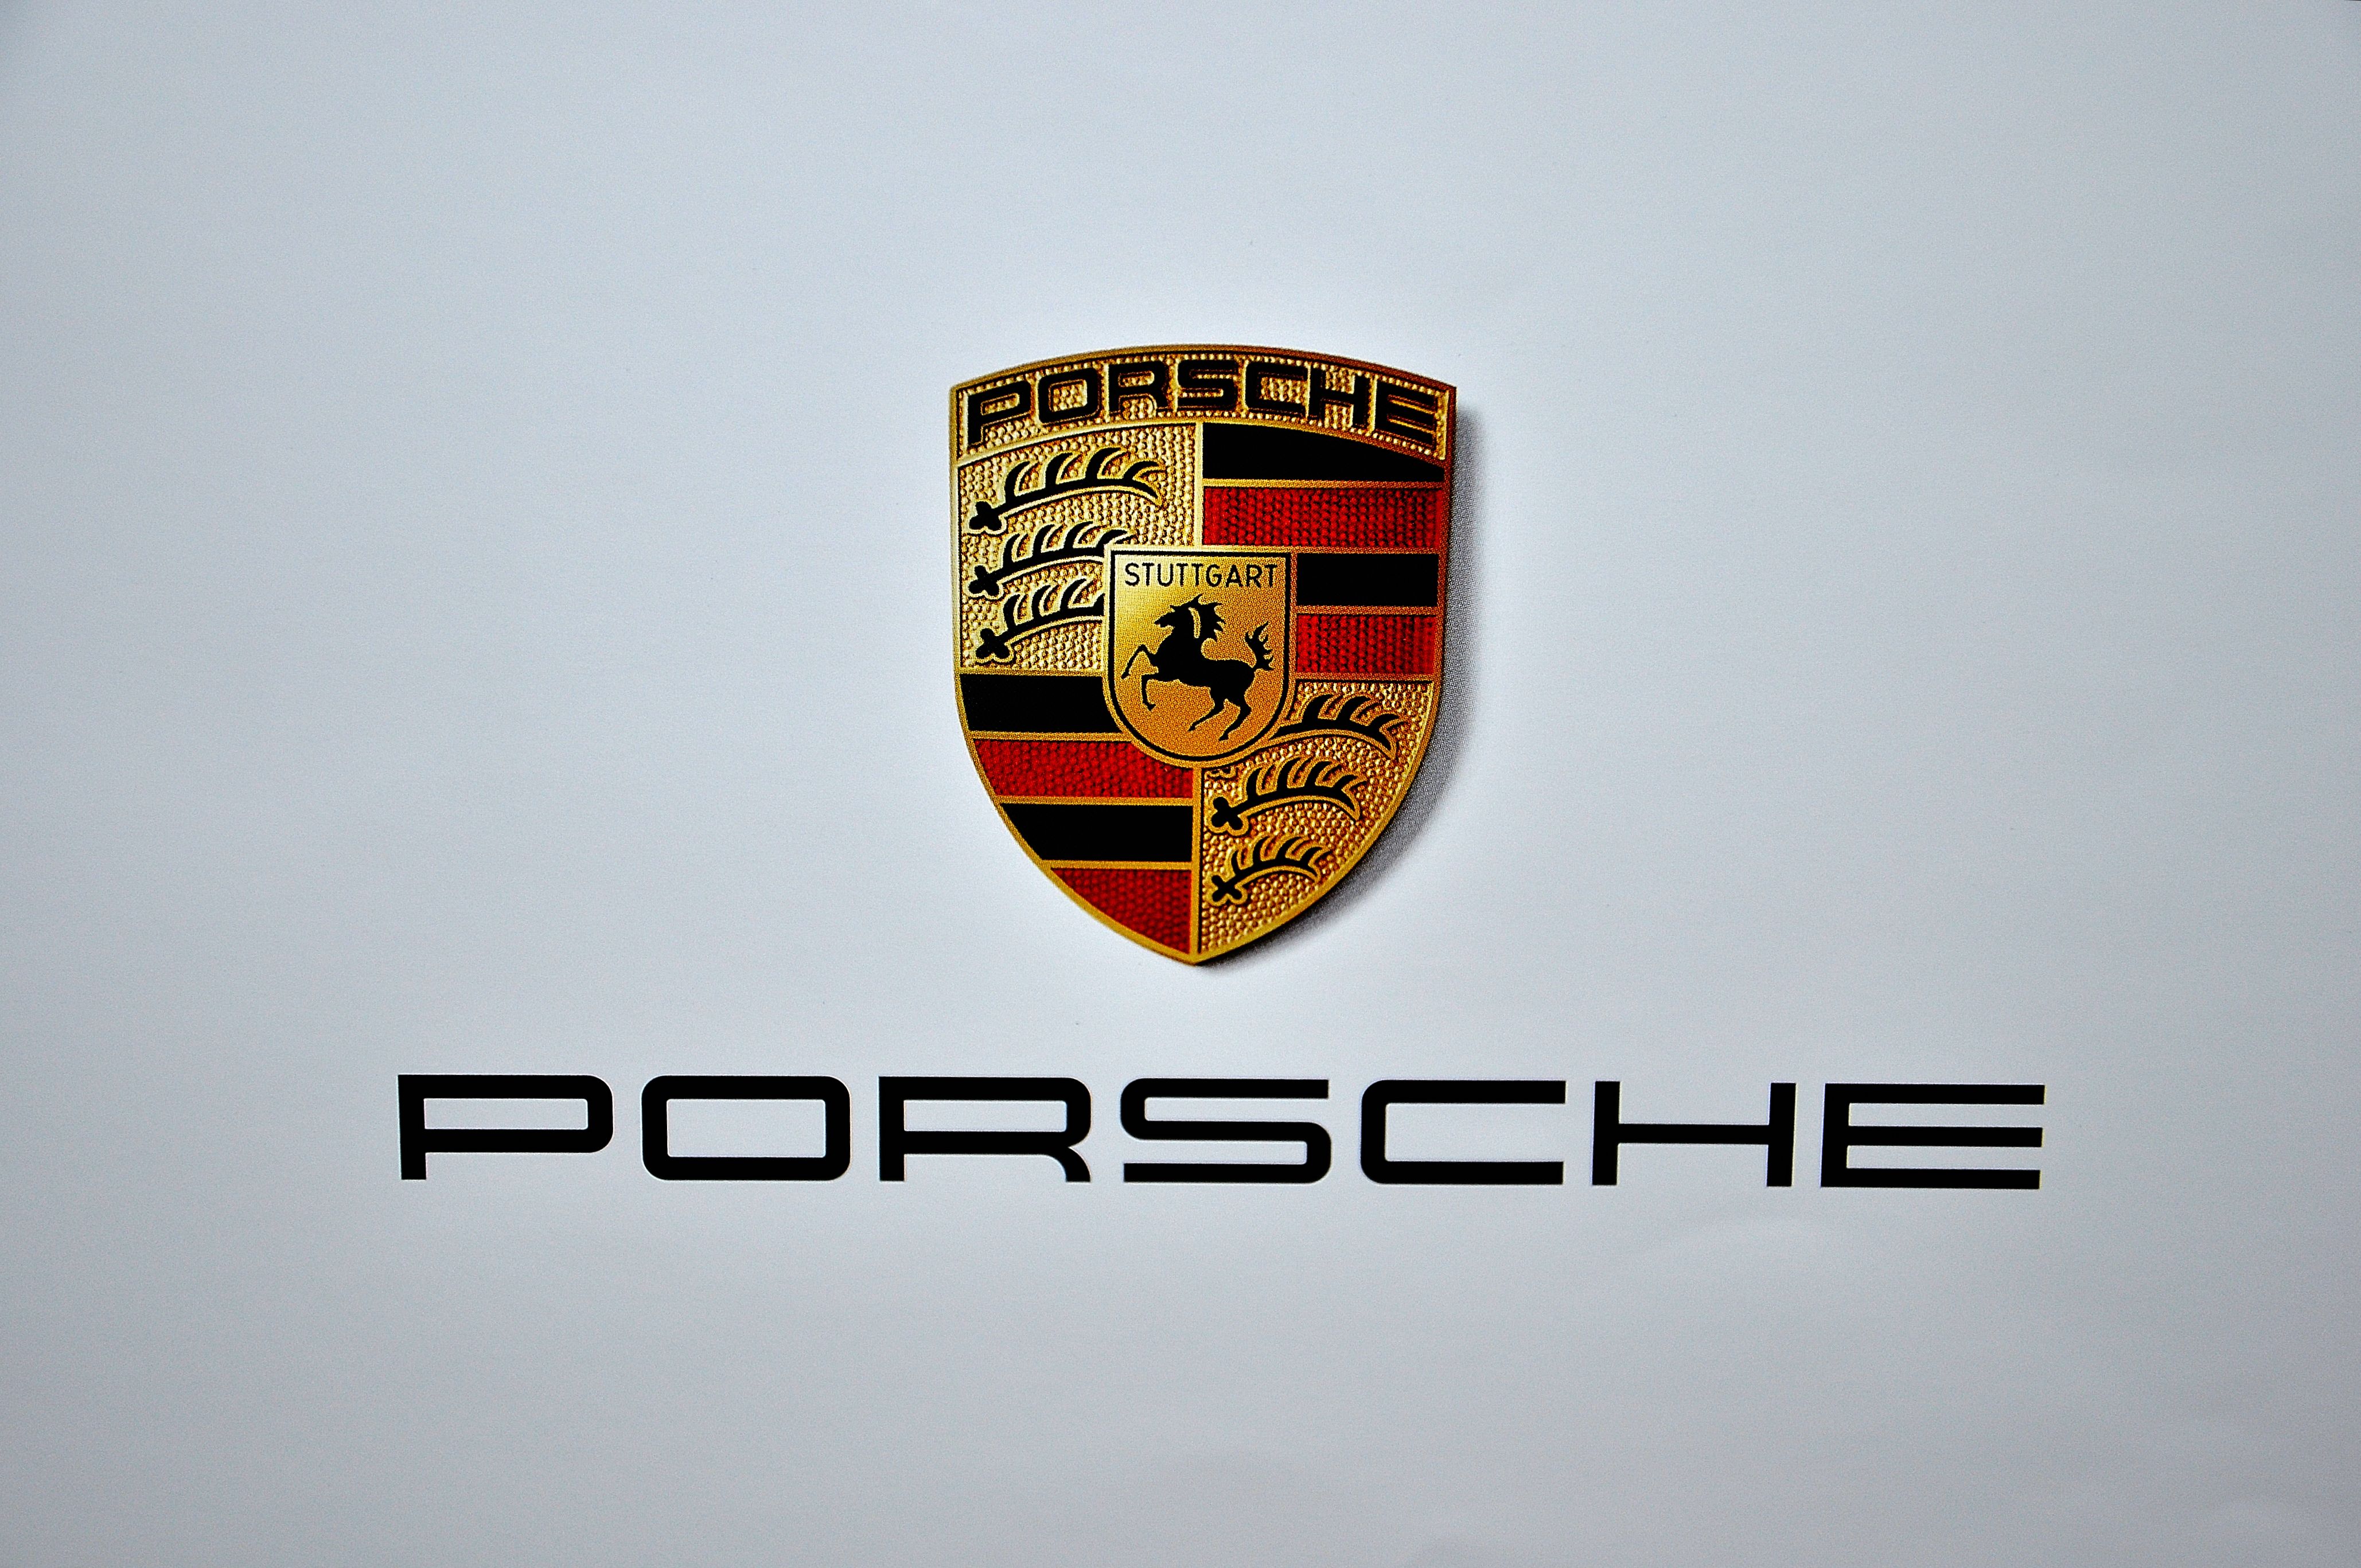 Porsche Emblem Wallpaper Porsche logo by jube96 4116x2734